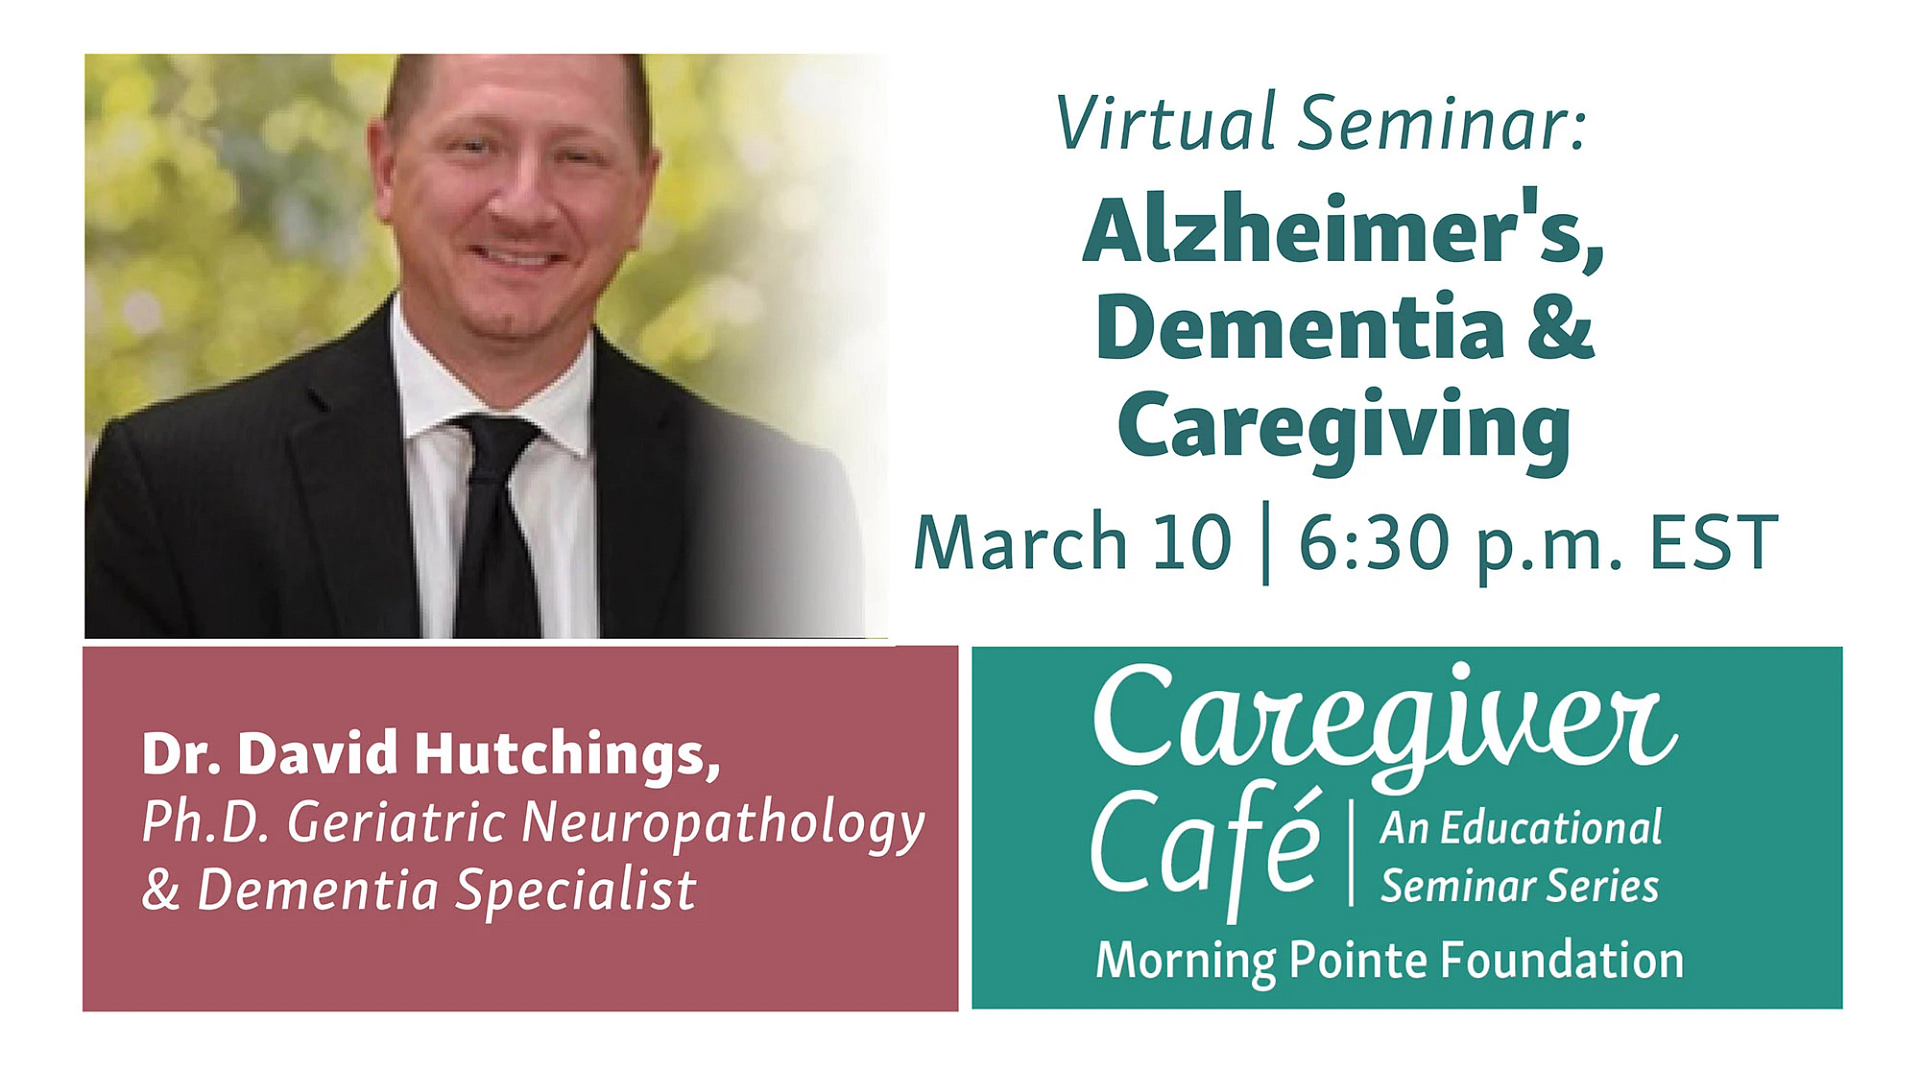 Alzheimer's, dementia, & caregiving virtual seminar